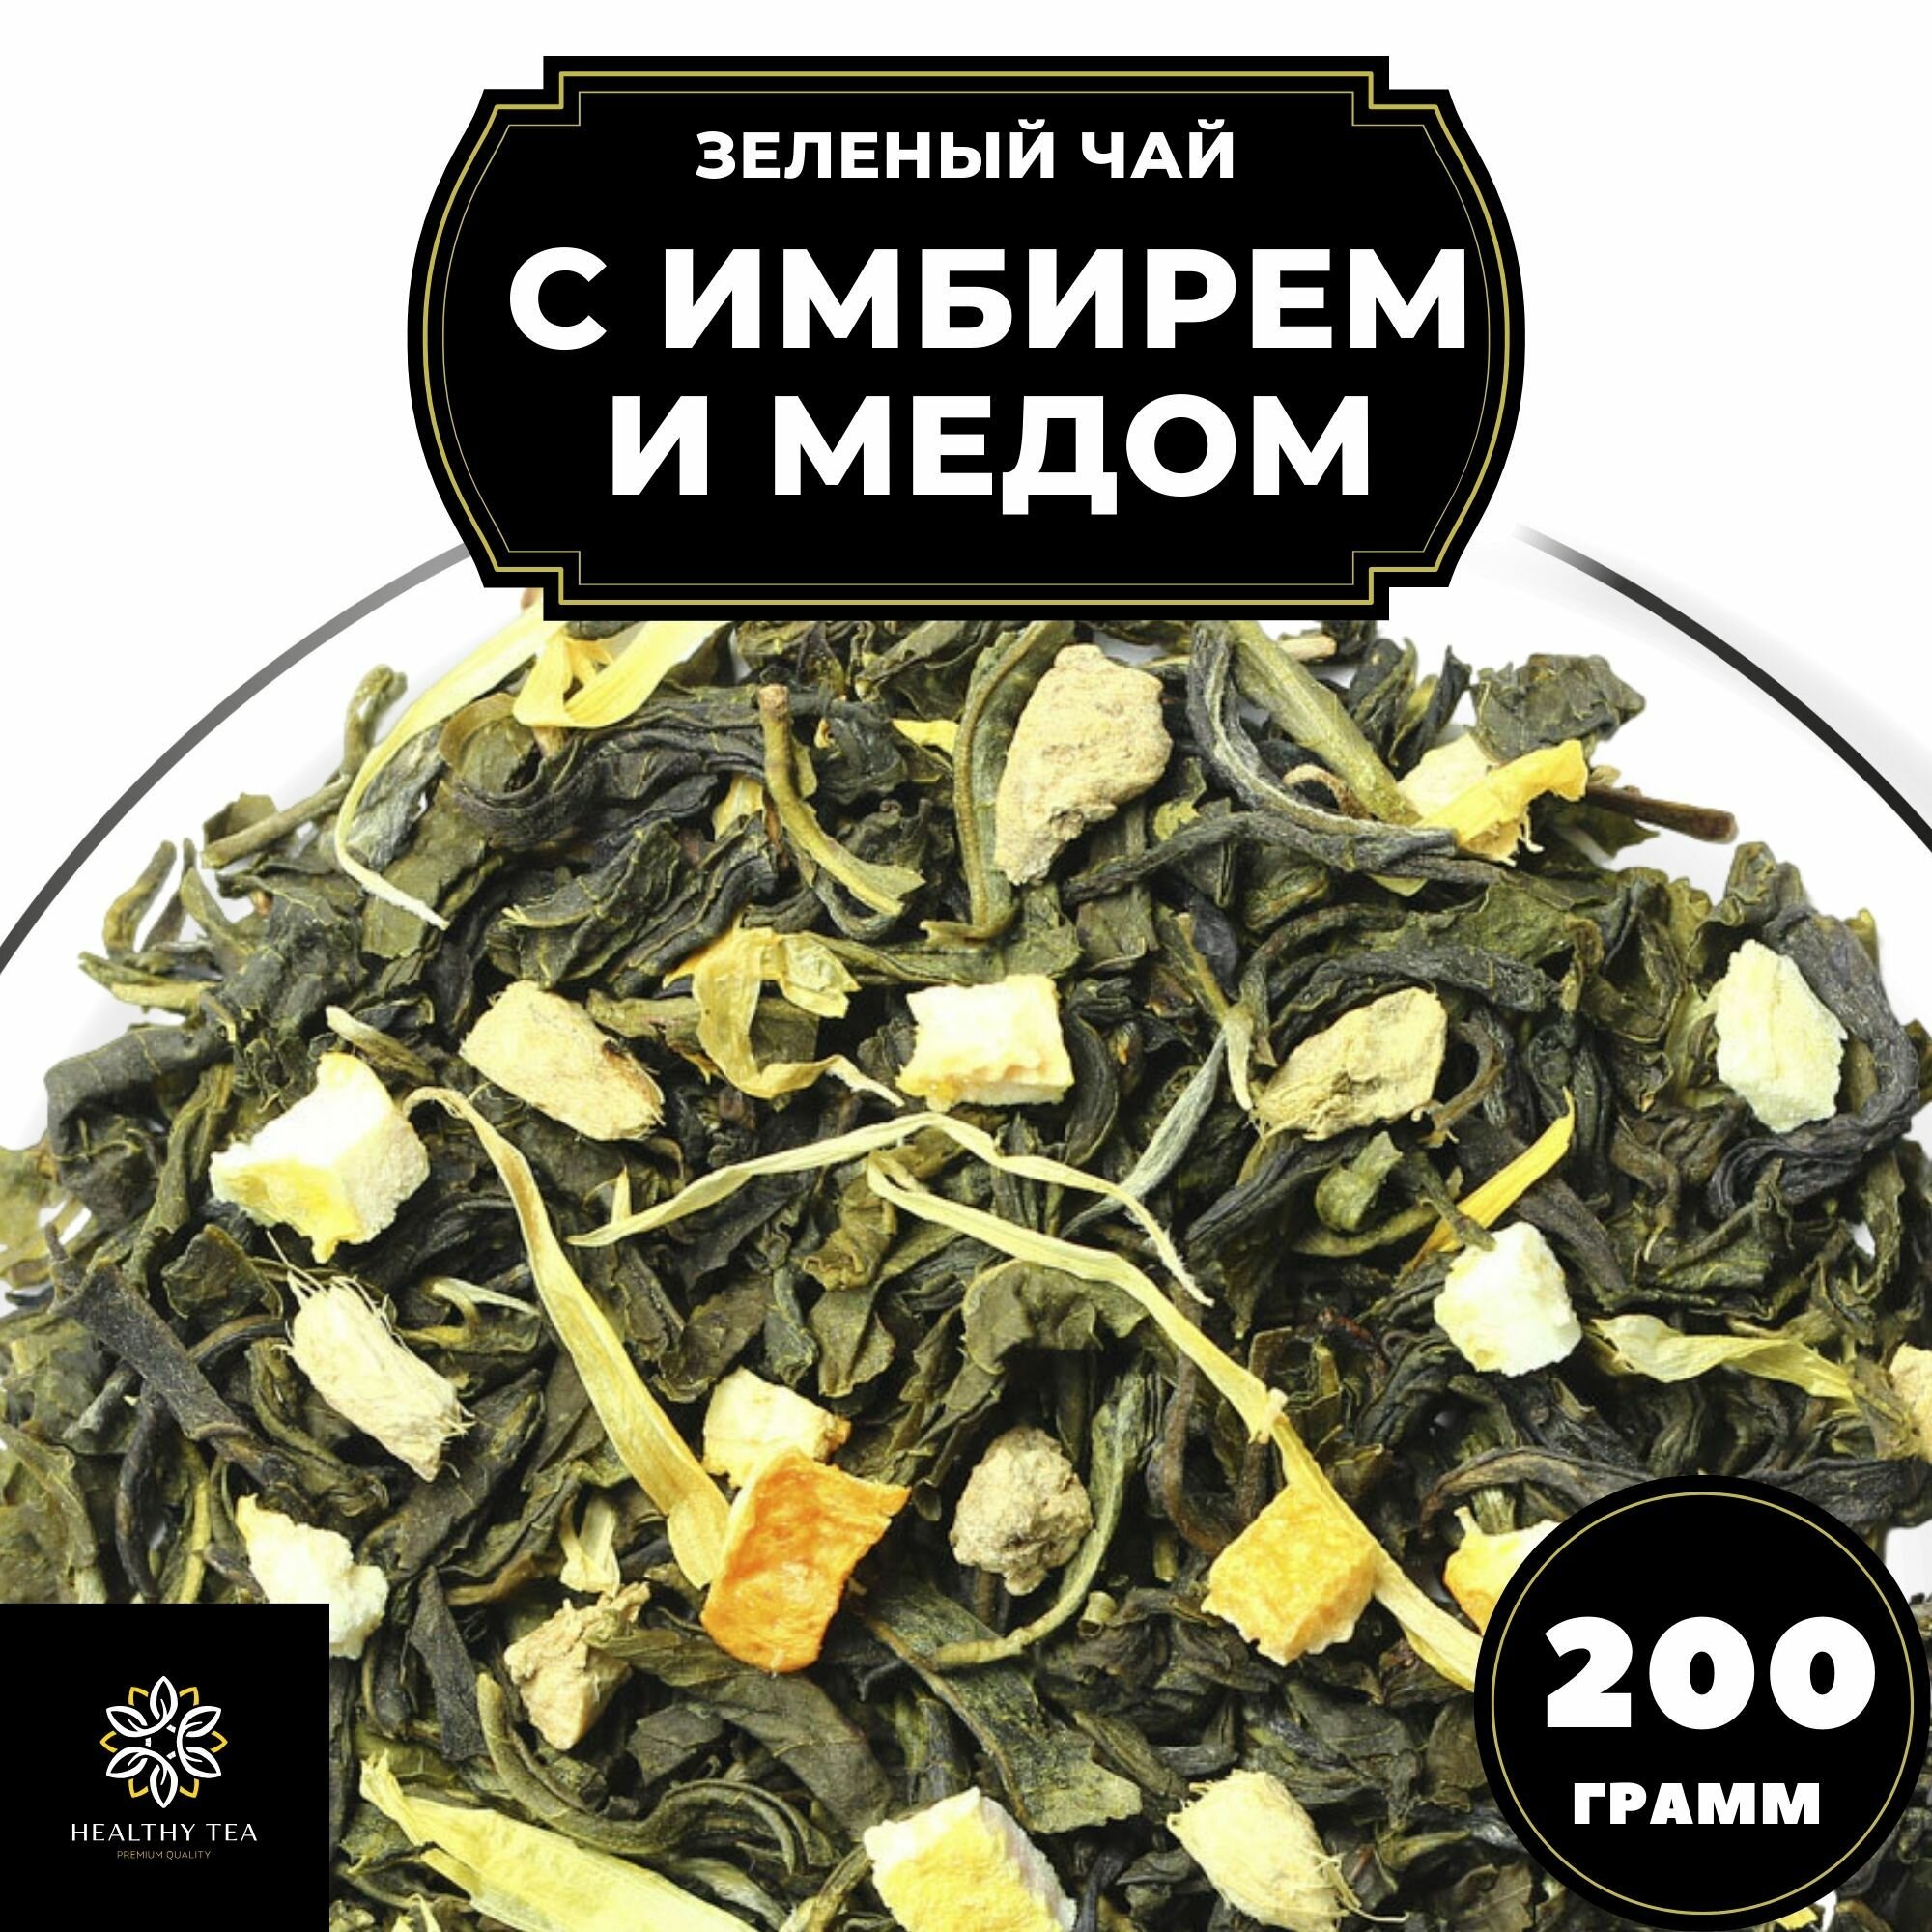 Китайский Зеленый чай с имбирем, лимоном и апельсином Имбирь-Мед Полезный чай / HEALTHY TEA, 200 г